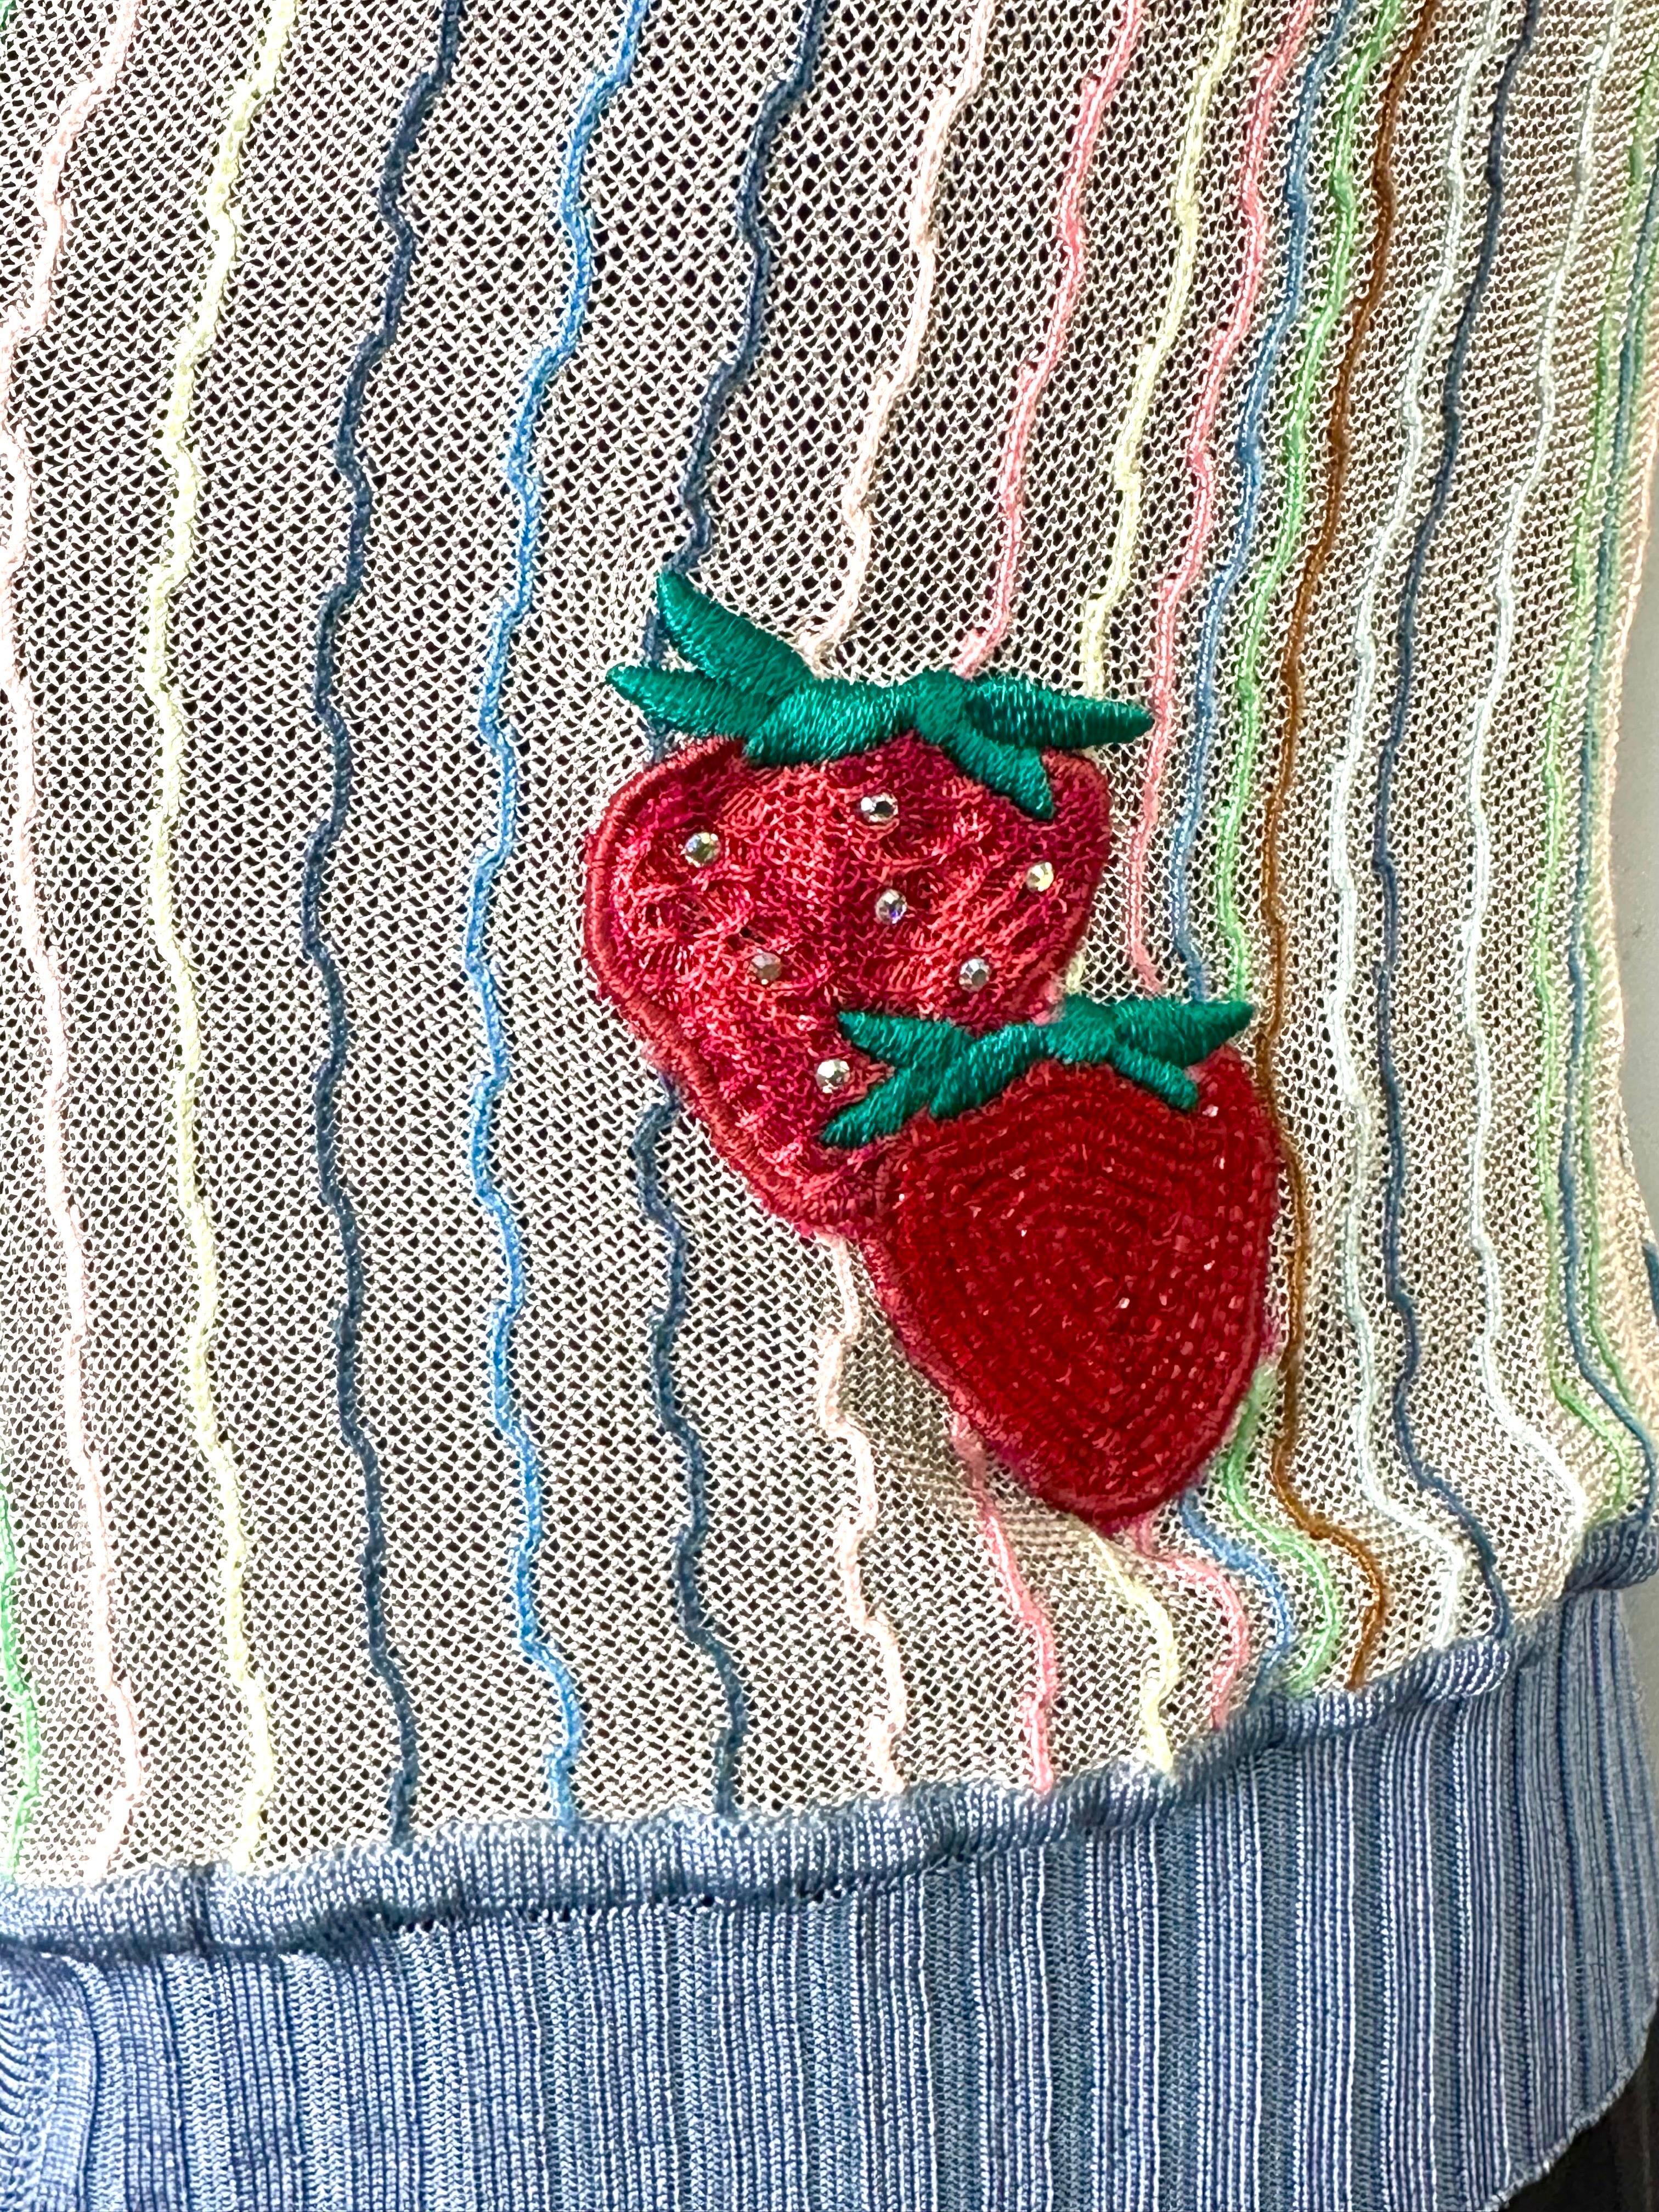 Missoni-Sammlerstrickjacke aus dem Jahr 2005 mit der Nummer 270/500
Diese Strickjacke aus Viskose und Baumwolle ist tailliert geschnitten und wird unter der Brust geknöpft. Sie ist mit perlen- und paillettenbesetzten Fruchtpatches versehen.
Größe 44